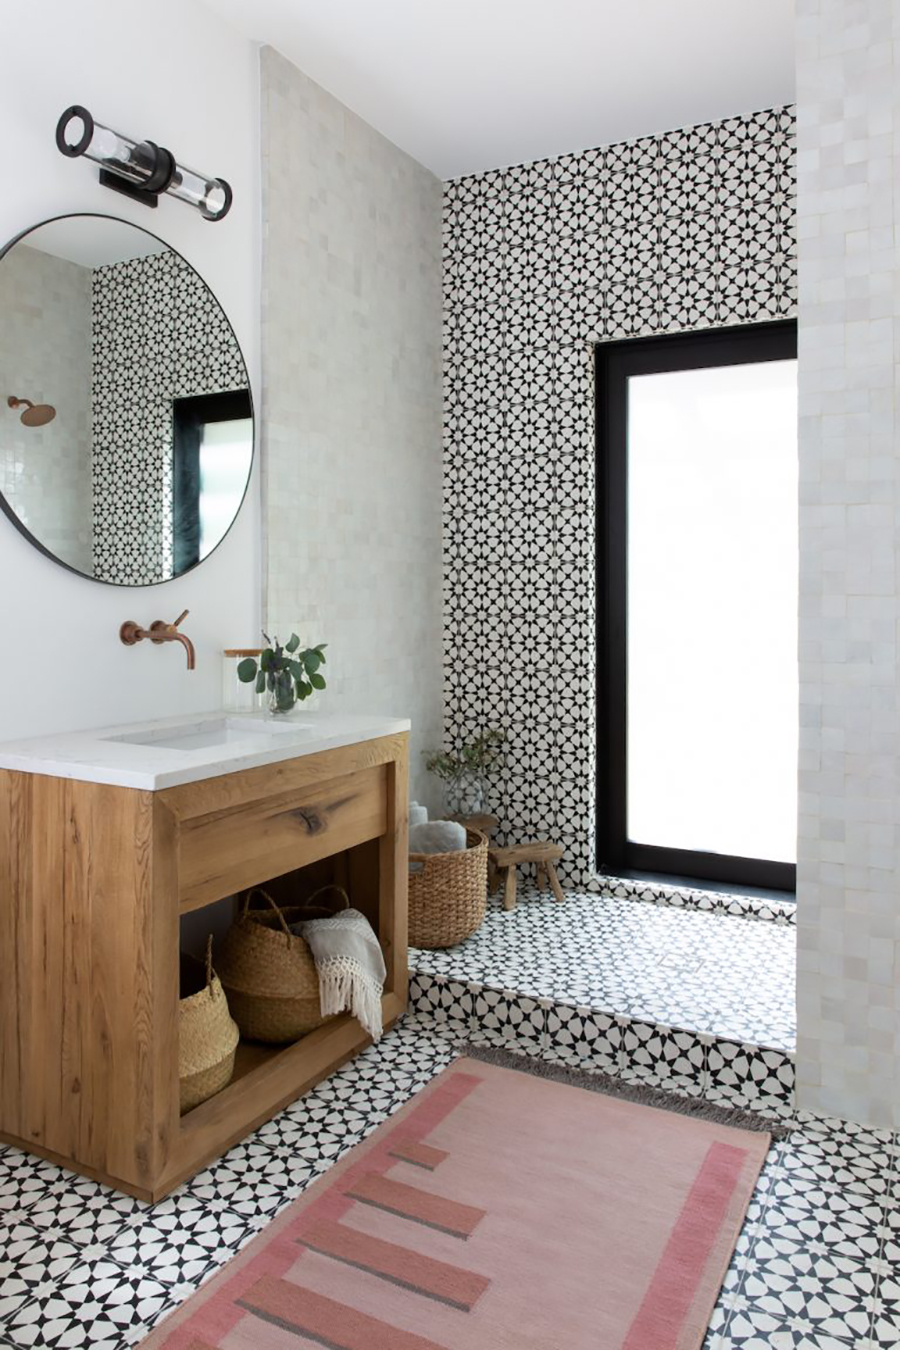 Ejemplo de adhesivos de muro y suelo con diseño vintage para modernizar el baño  / www.camillestyles.com